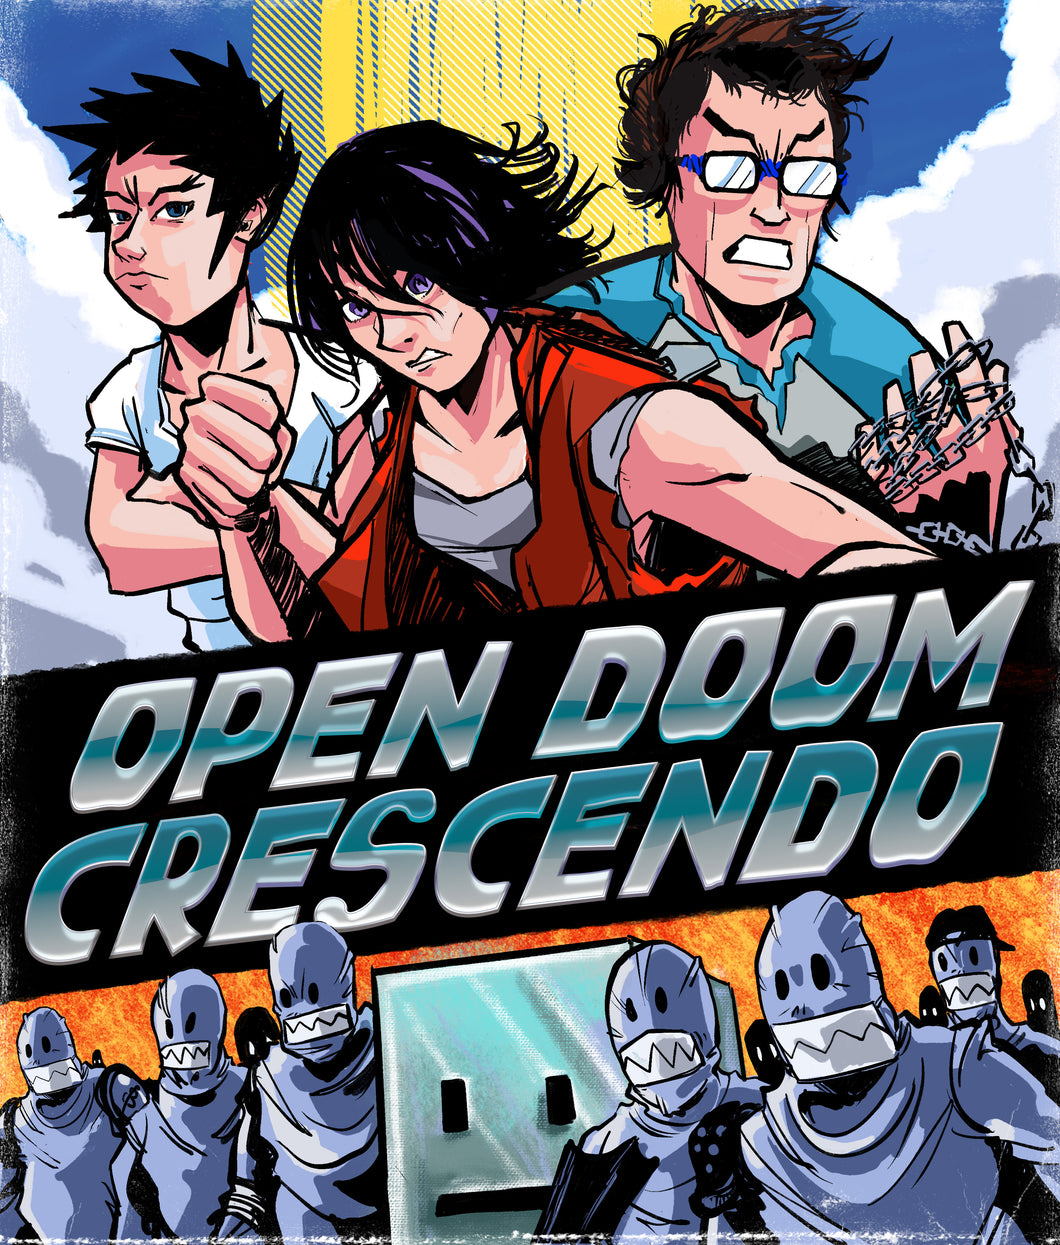 Blu-ray: Open Doom Crescendo (Cover A)